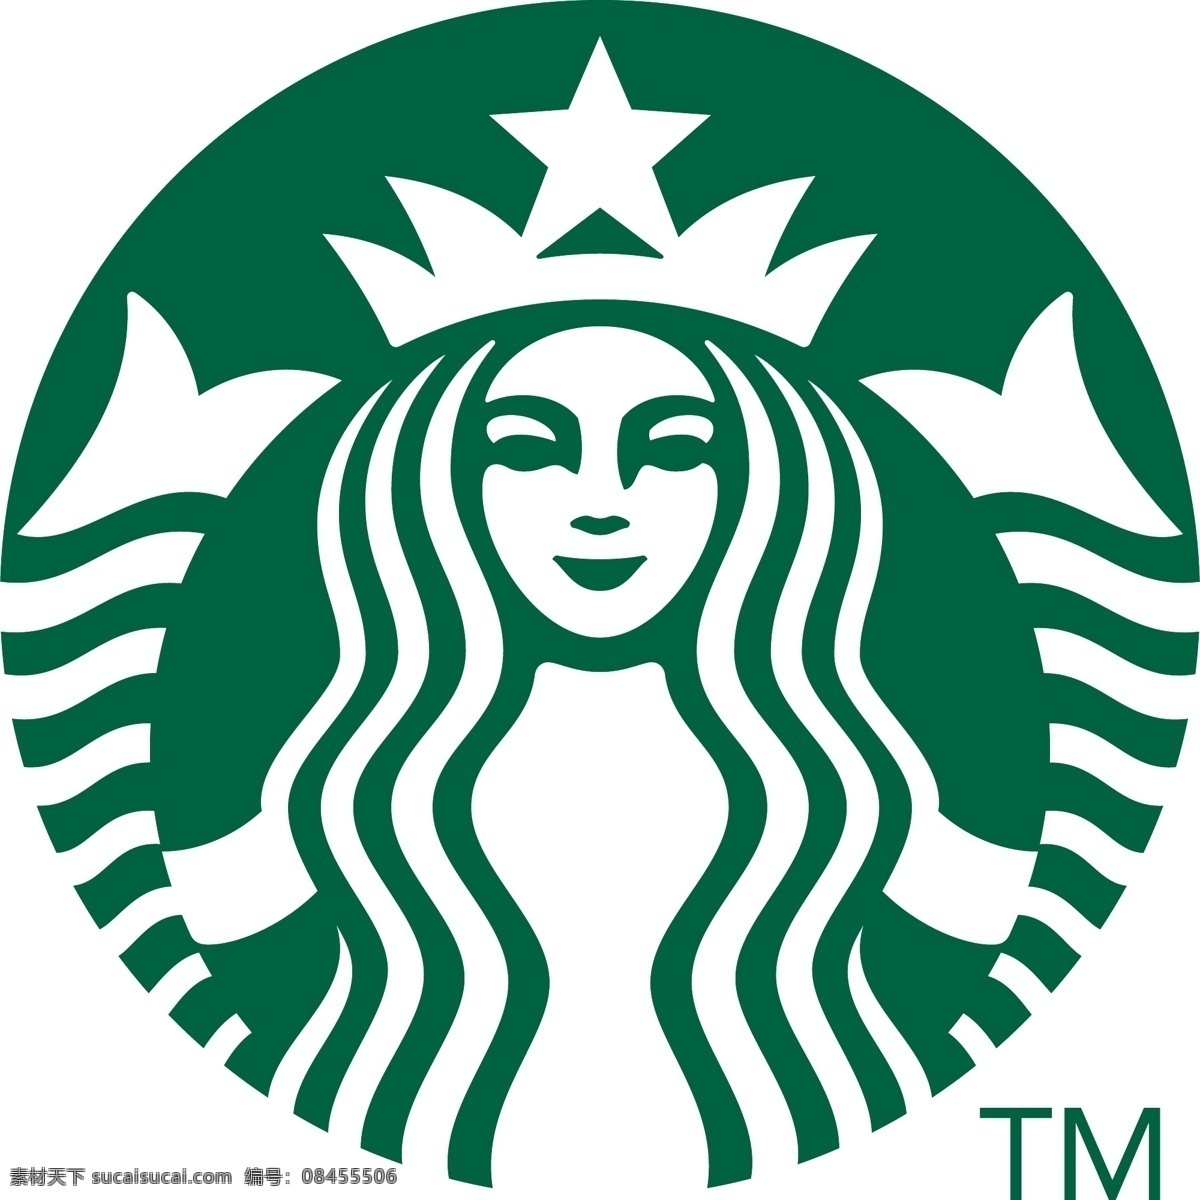 星 巴克 logo 星巴克 矢量 图形 vi 标志图标 企业 标志